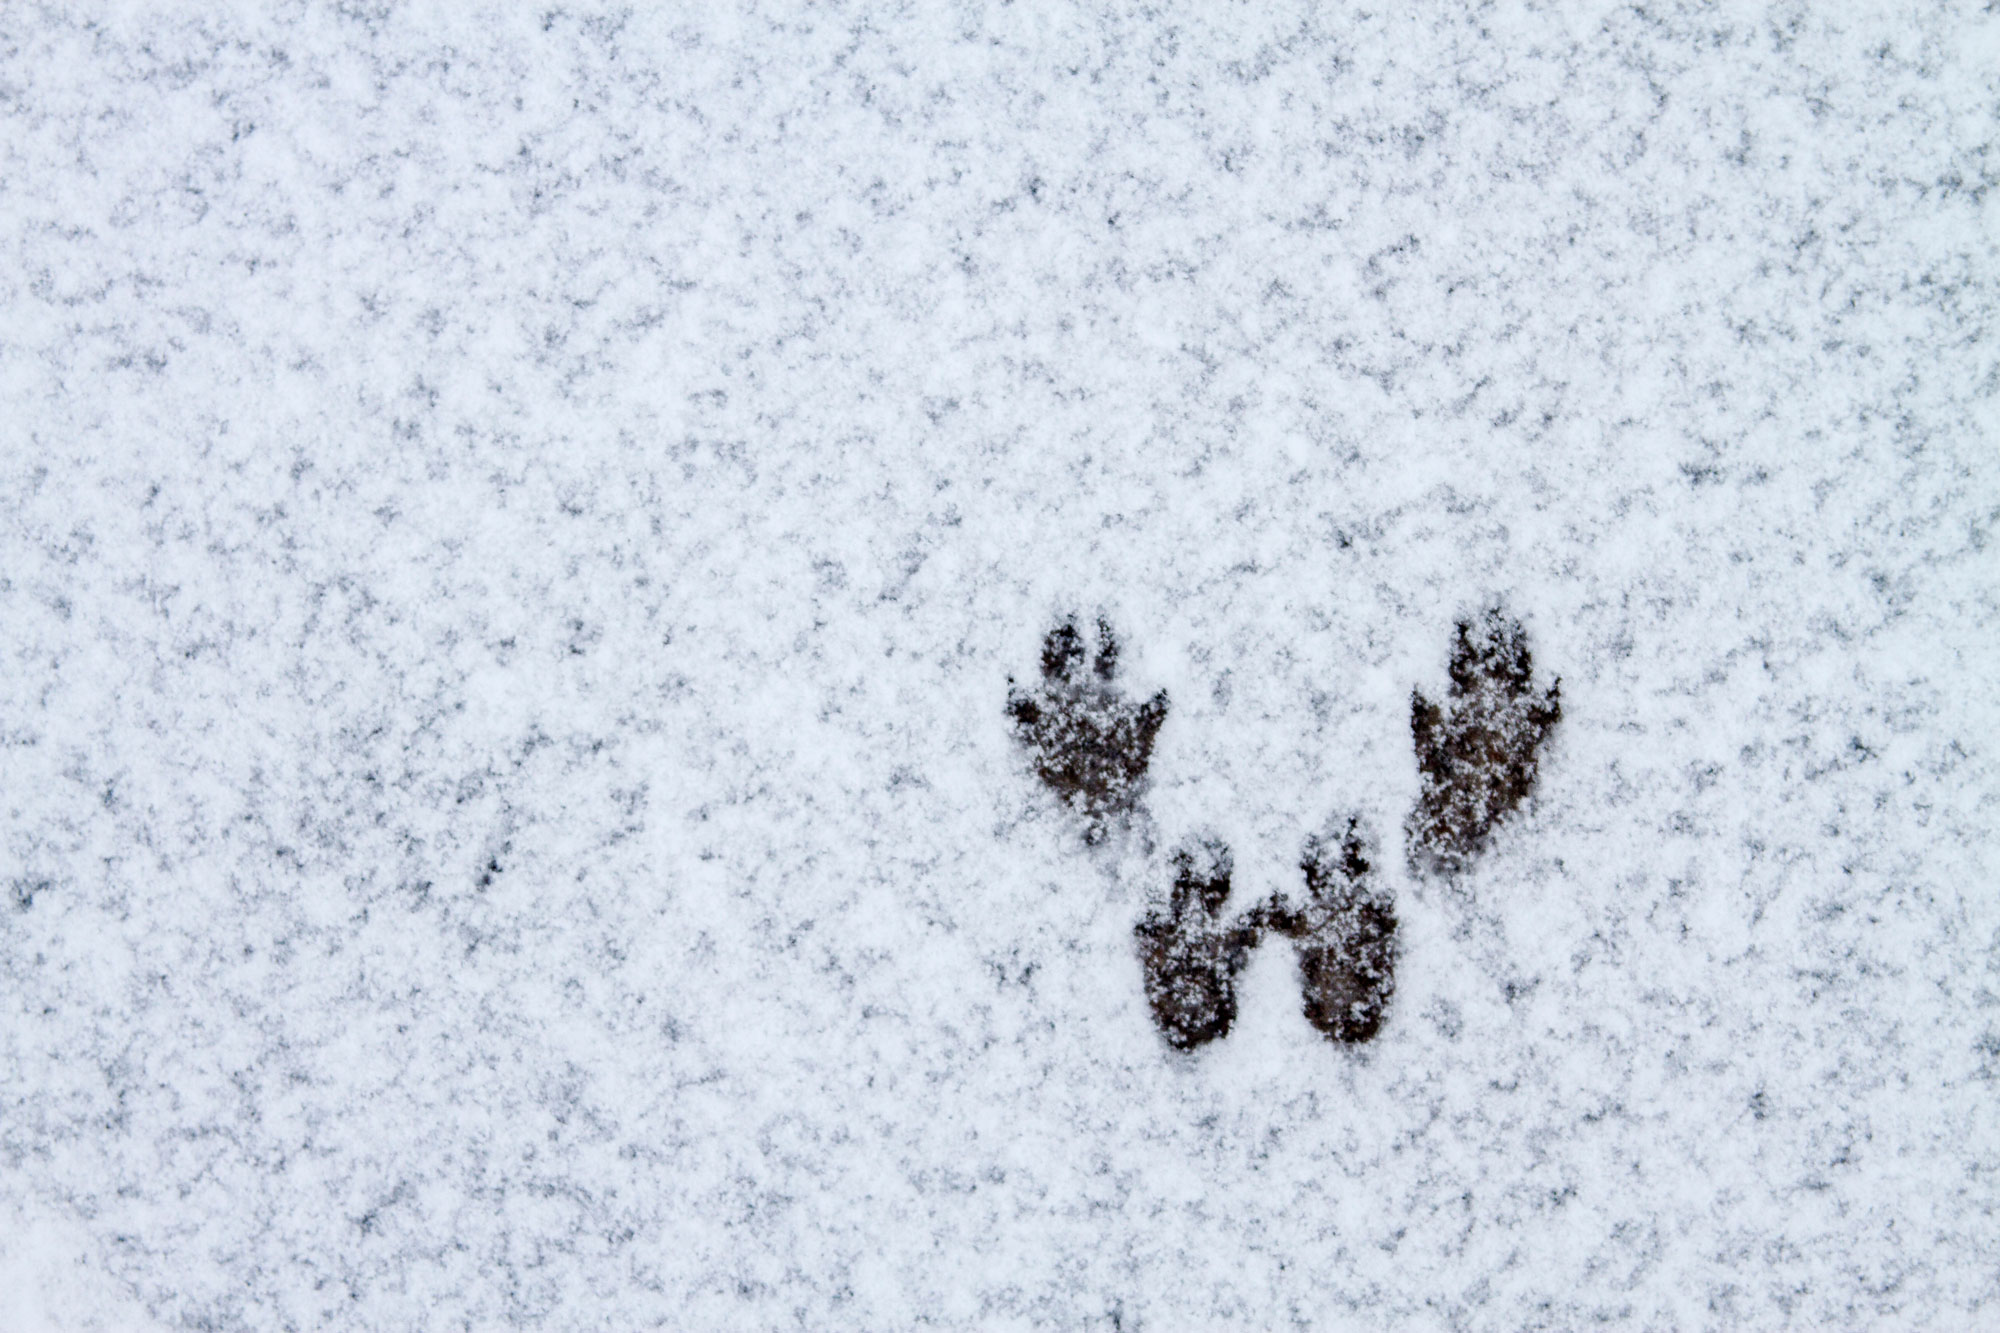 Рисунок следы на снегу зайца